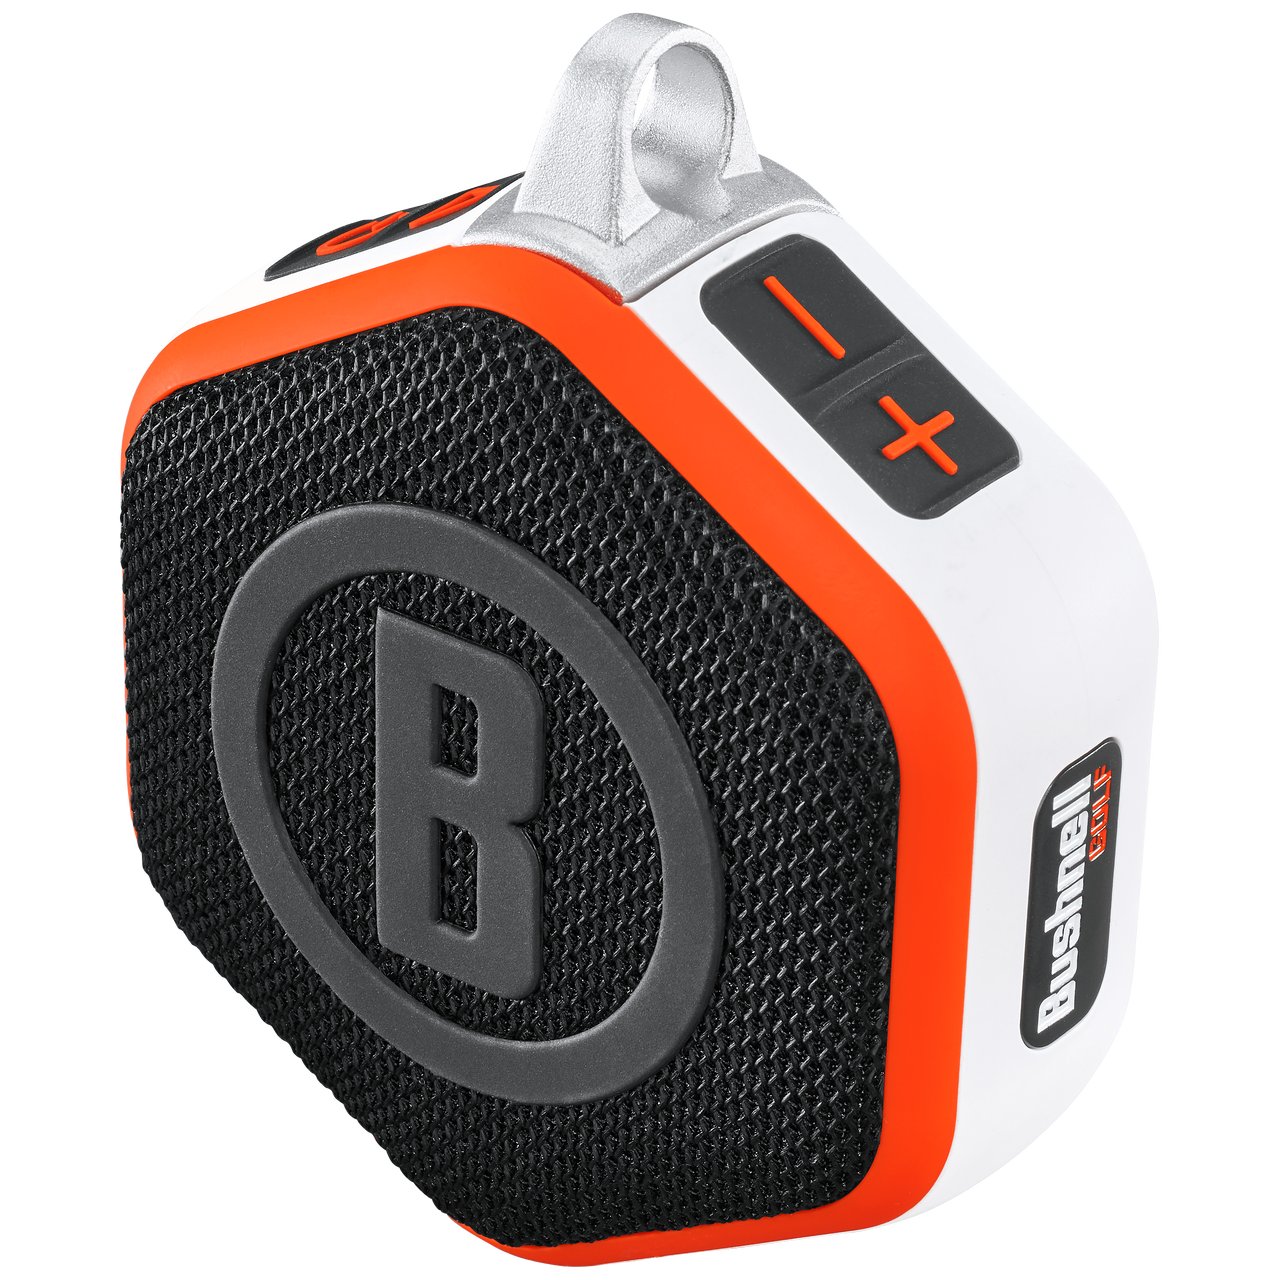 Bushnell Wingman Mini GPS Speaker